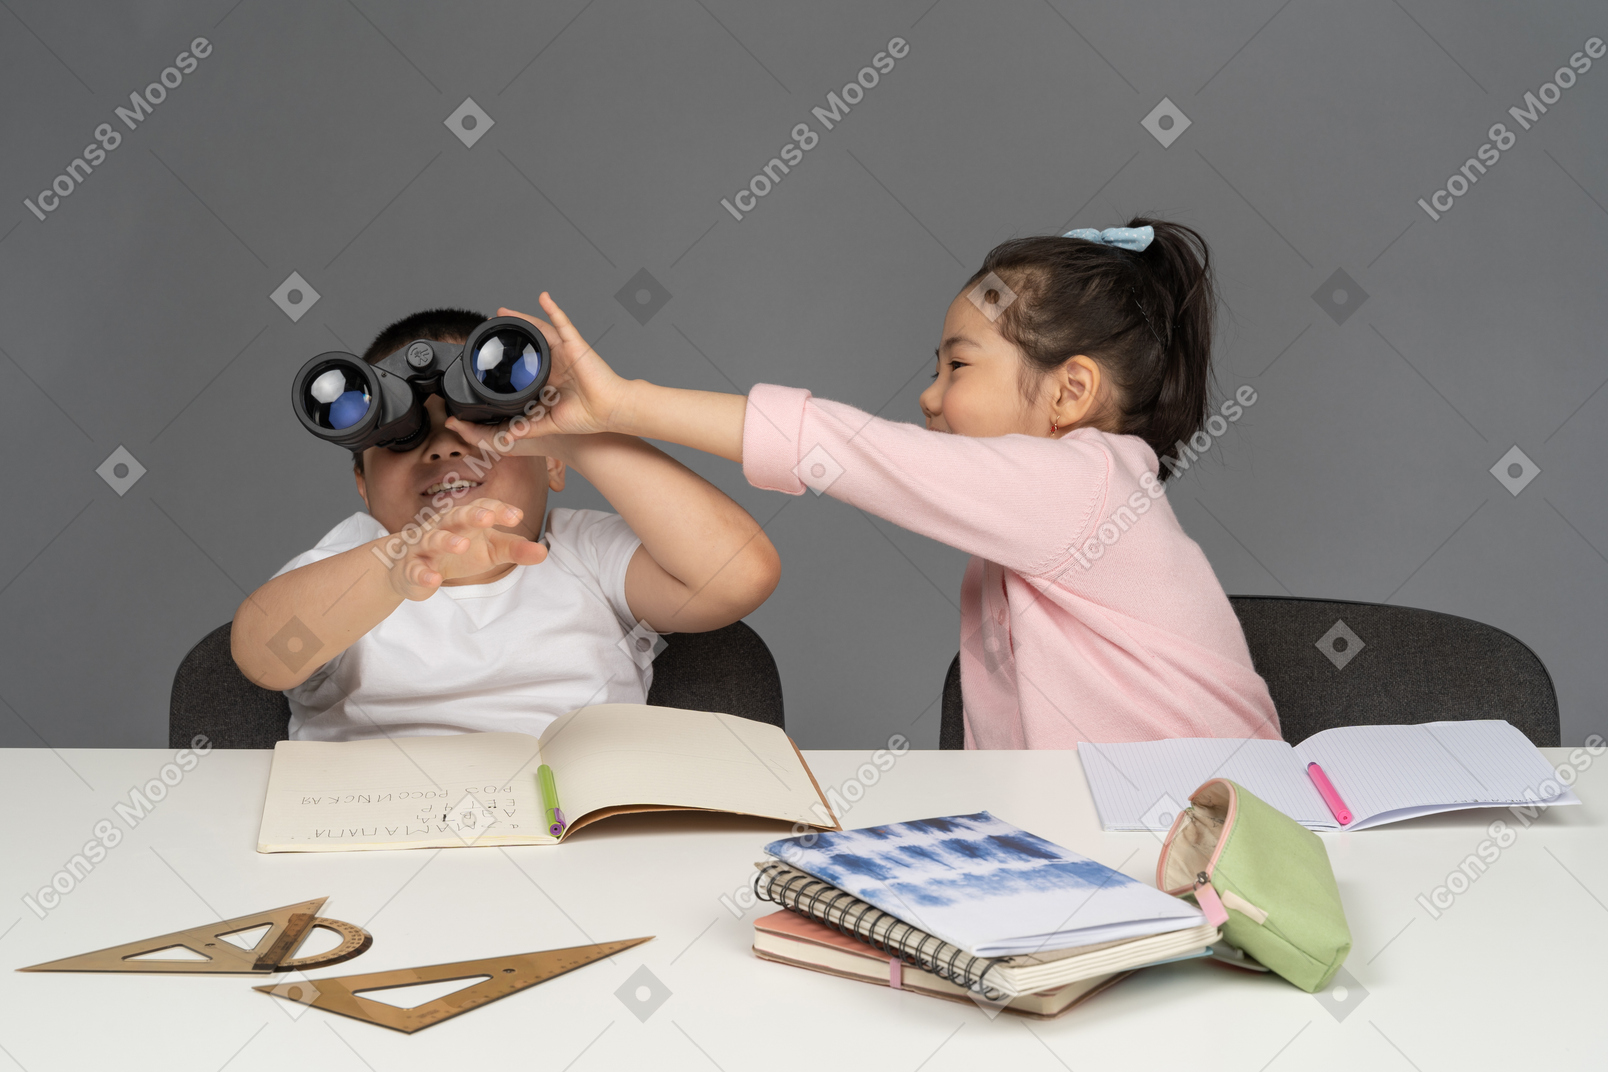 Niña tomando binoculares de su hermano